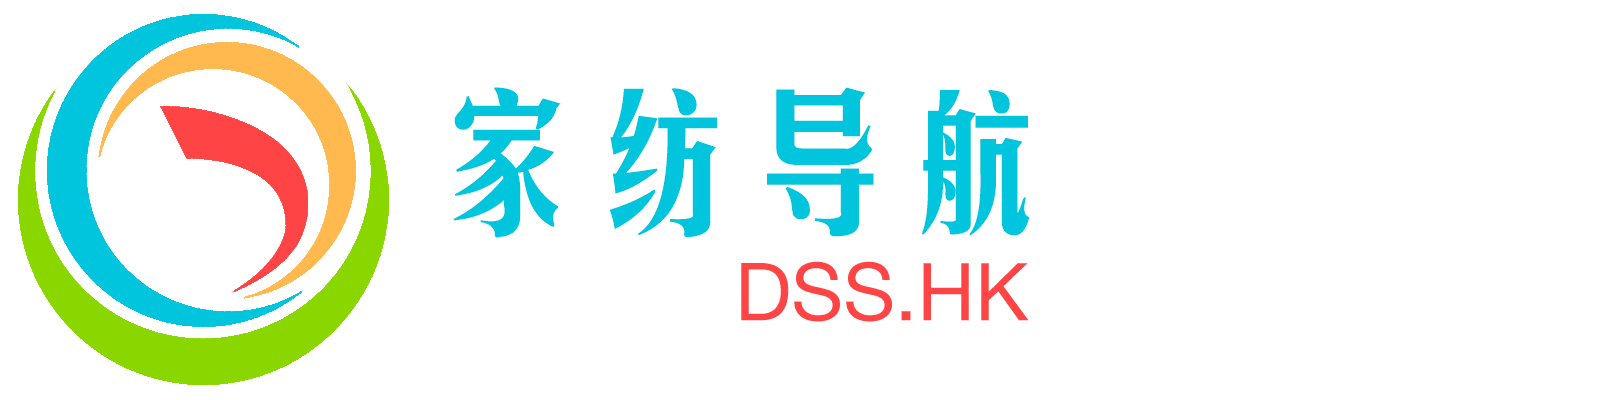 DSS.HK新家纺